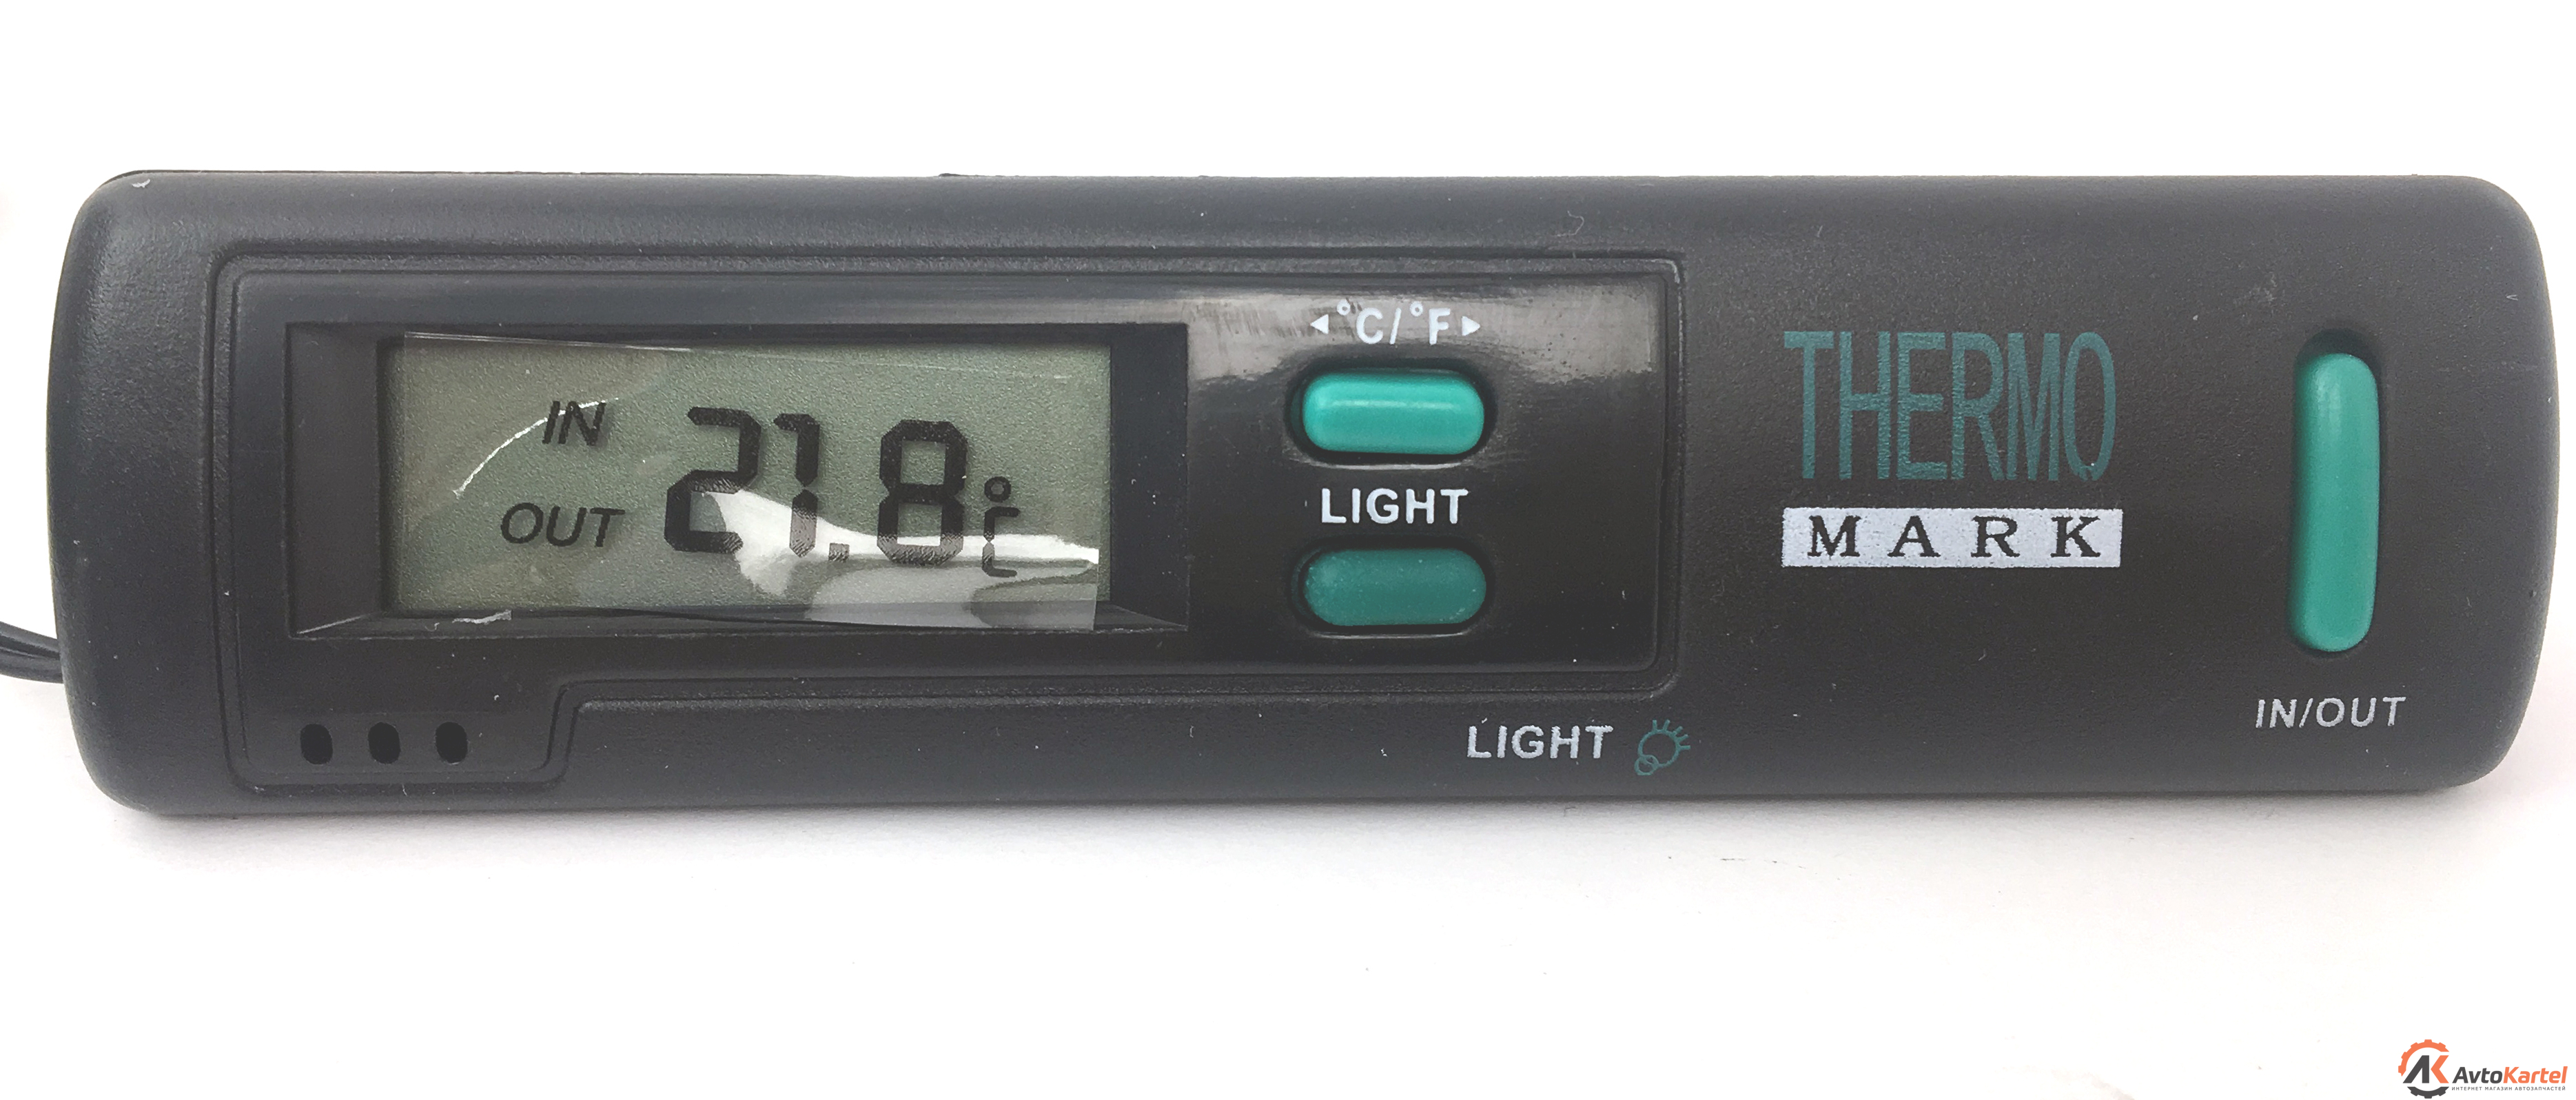 Термометр цифровой с датчиком температуры и подсветкой Autostandart